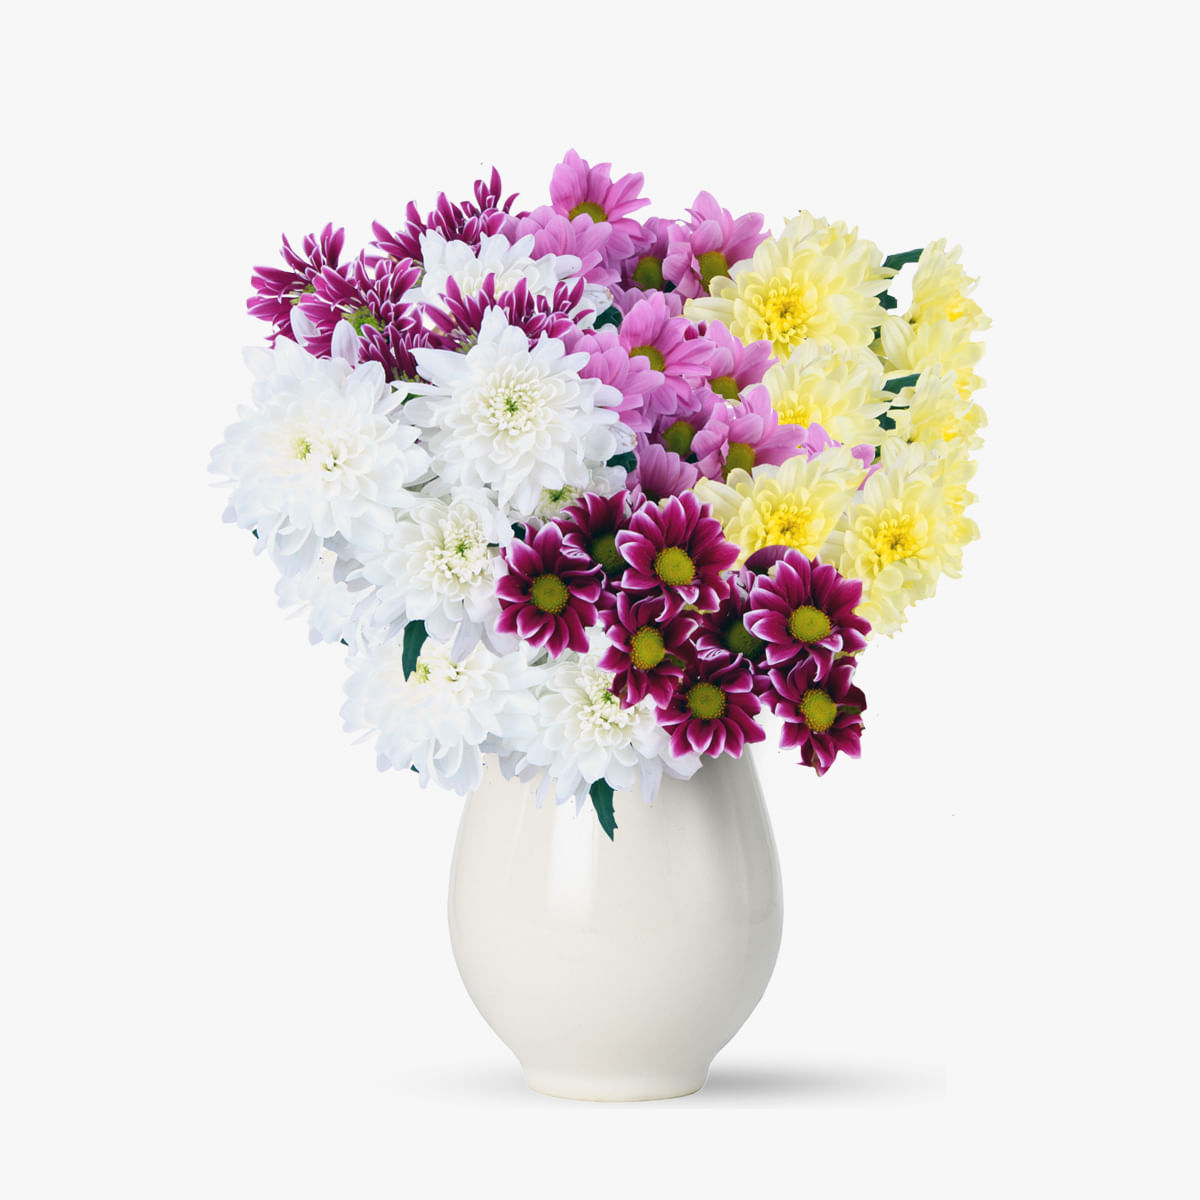 Buchet de 15 crizanteme multicolore – Standard Buchet imagine 2022